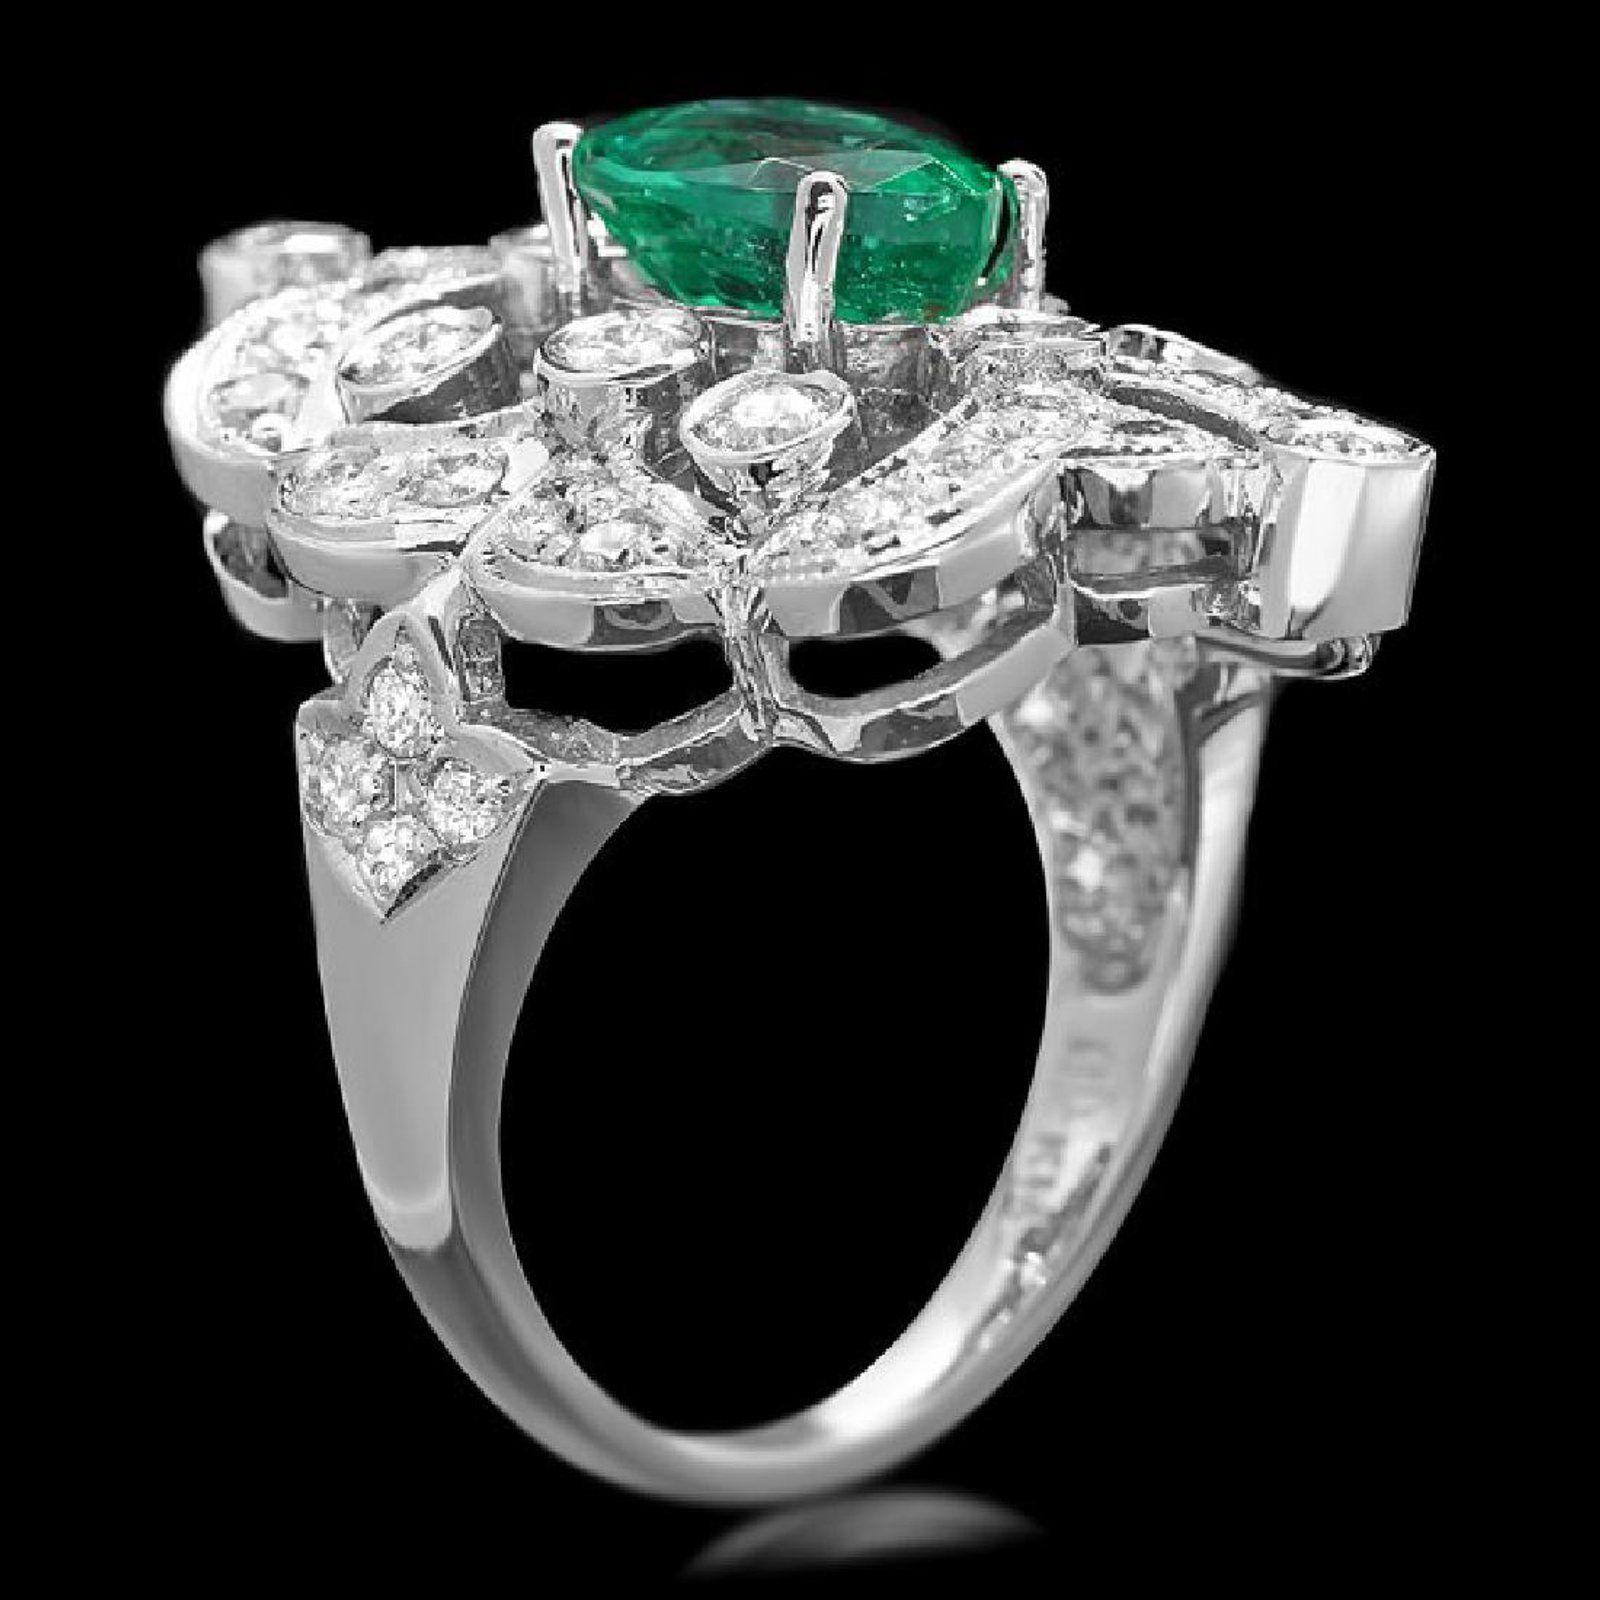 3.25 Karat Natürlicher Smaragd und Diamant 14K Massiv Weißgold Ring

Total Natural Green Emerald Gewicht ist: Ca. 2,00 Karat (transparent)

Smaragd Maße: Ca. 9,00 x 7,00 mm

Smaragd Behandlung: Ölen

Natürliche runde Diamanten Gewicht: Ca. 1,25